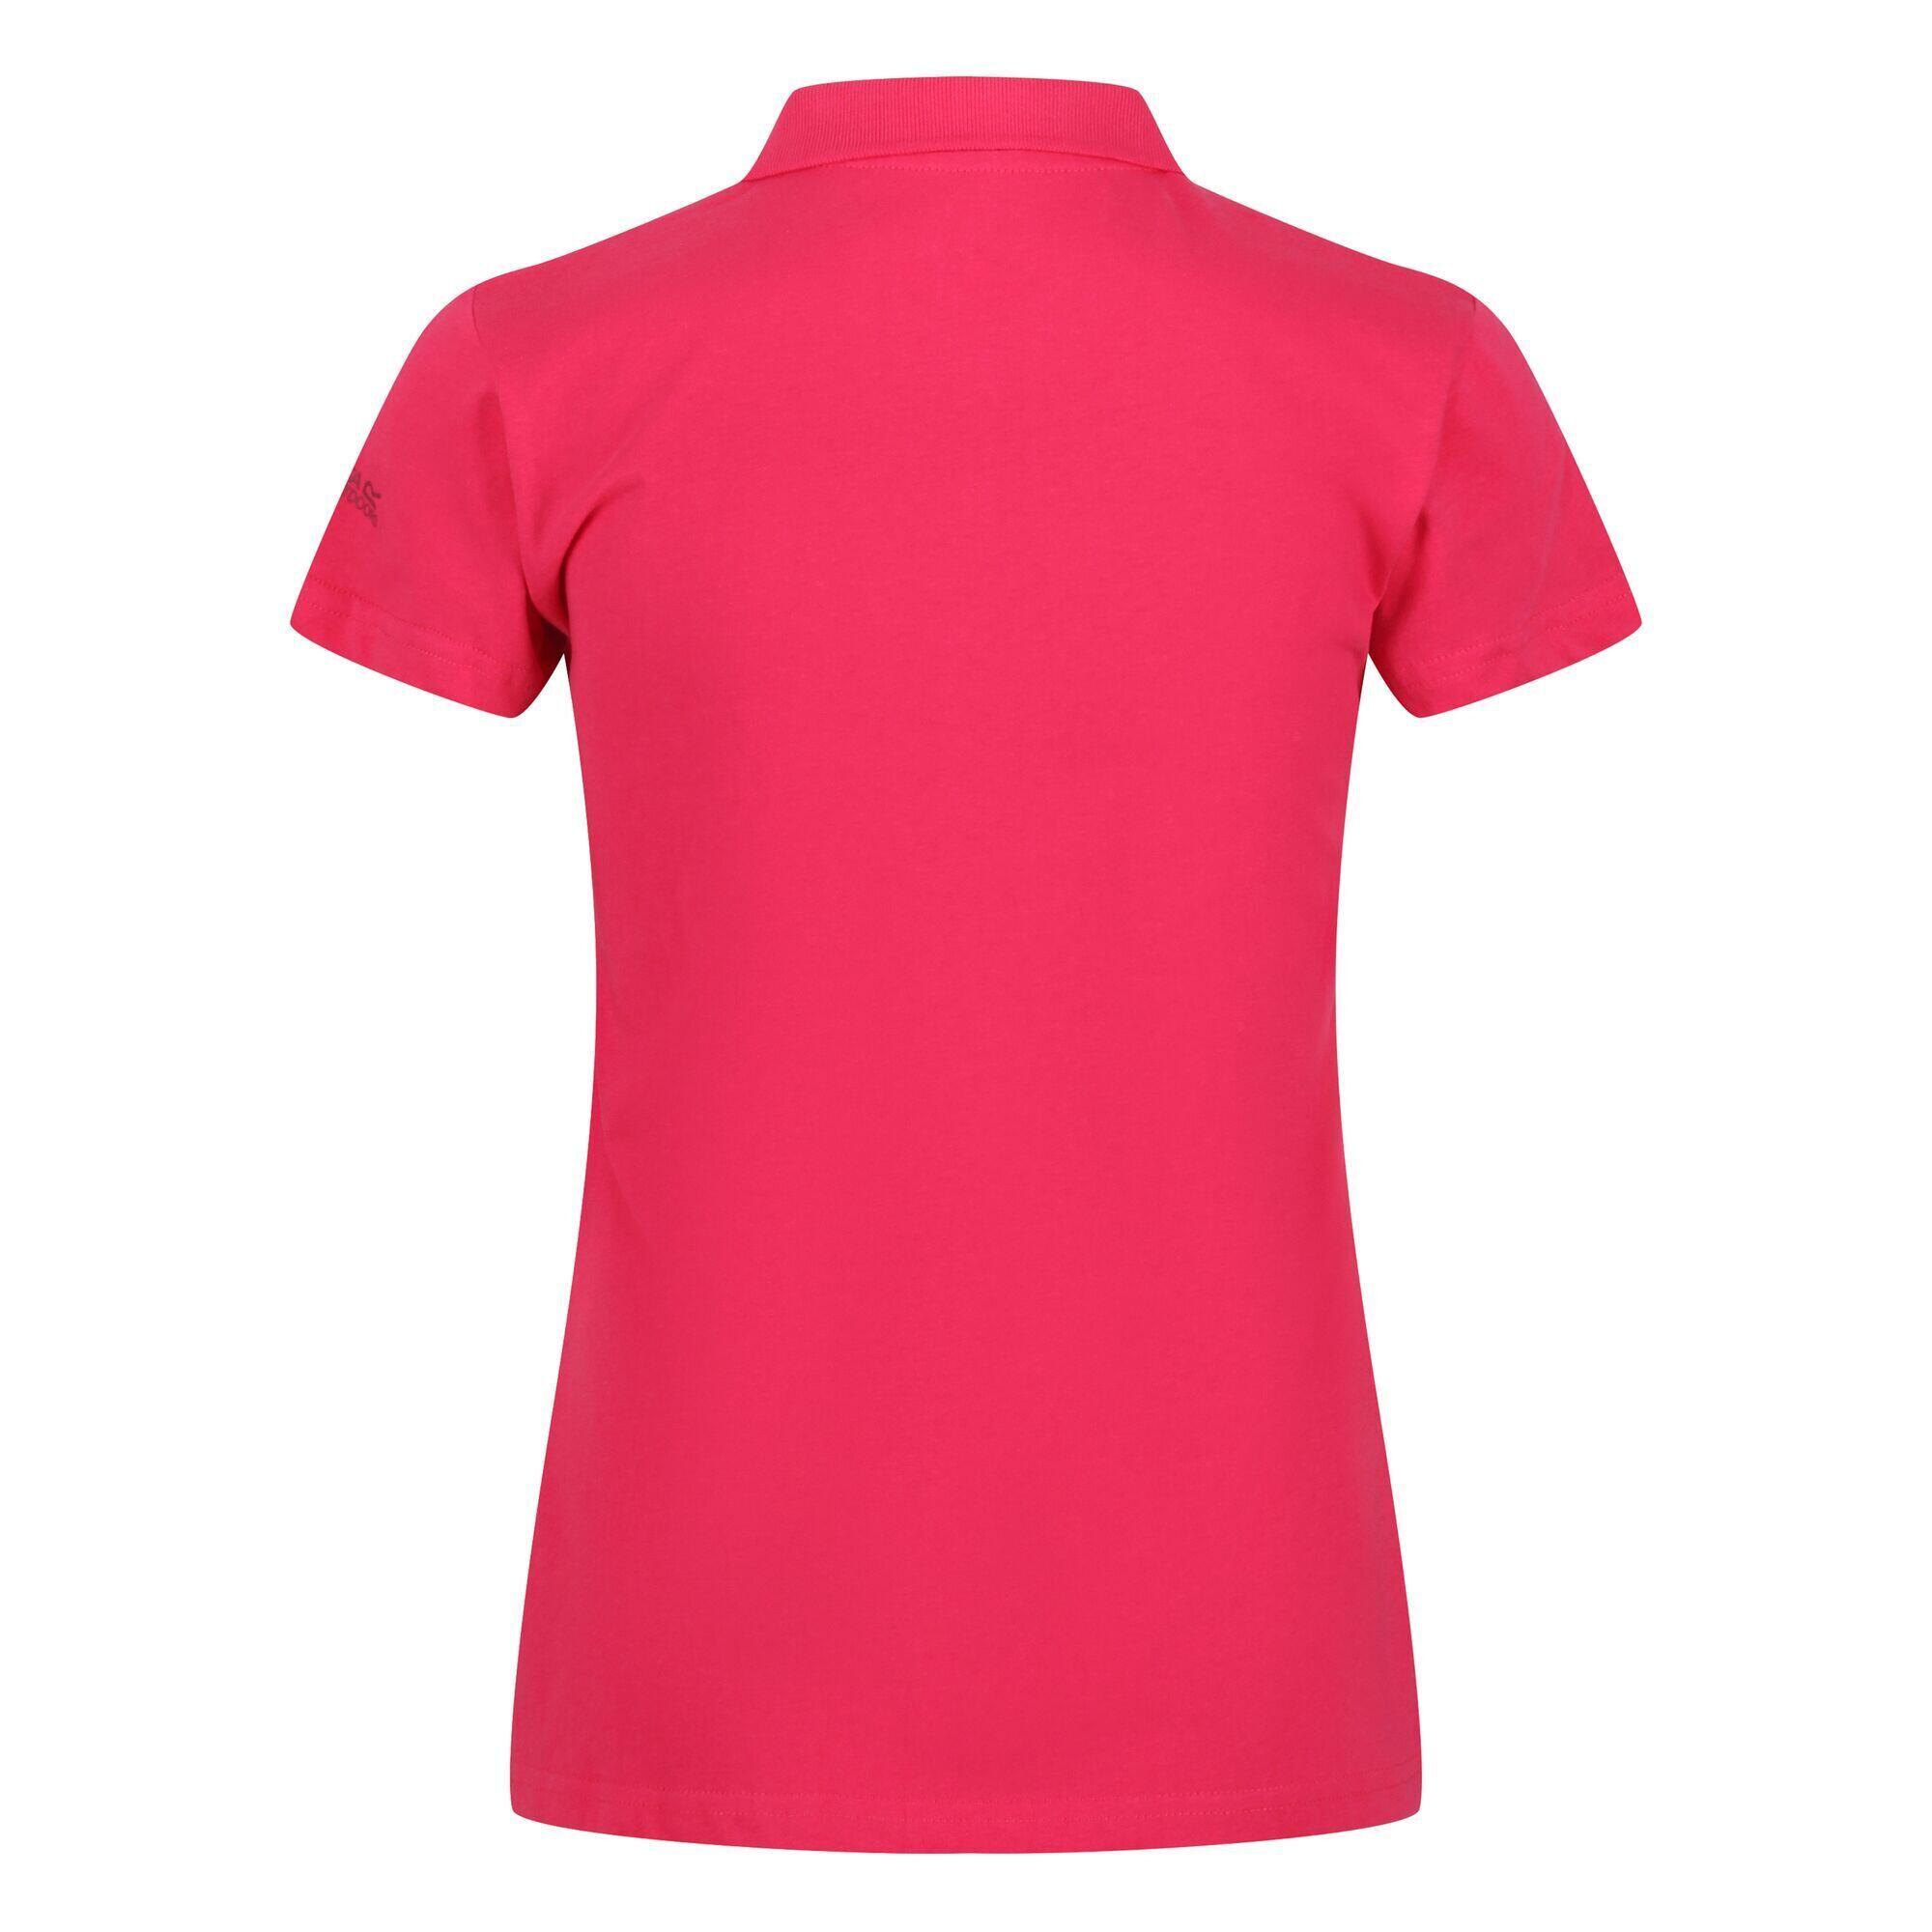 Womens/Ladies Sinton Polo Shirt (Rethink Pink) 2/4